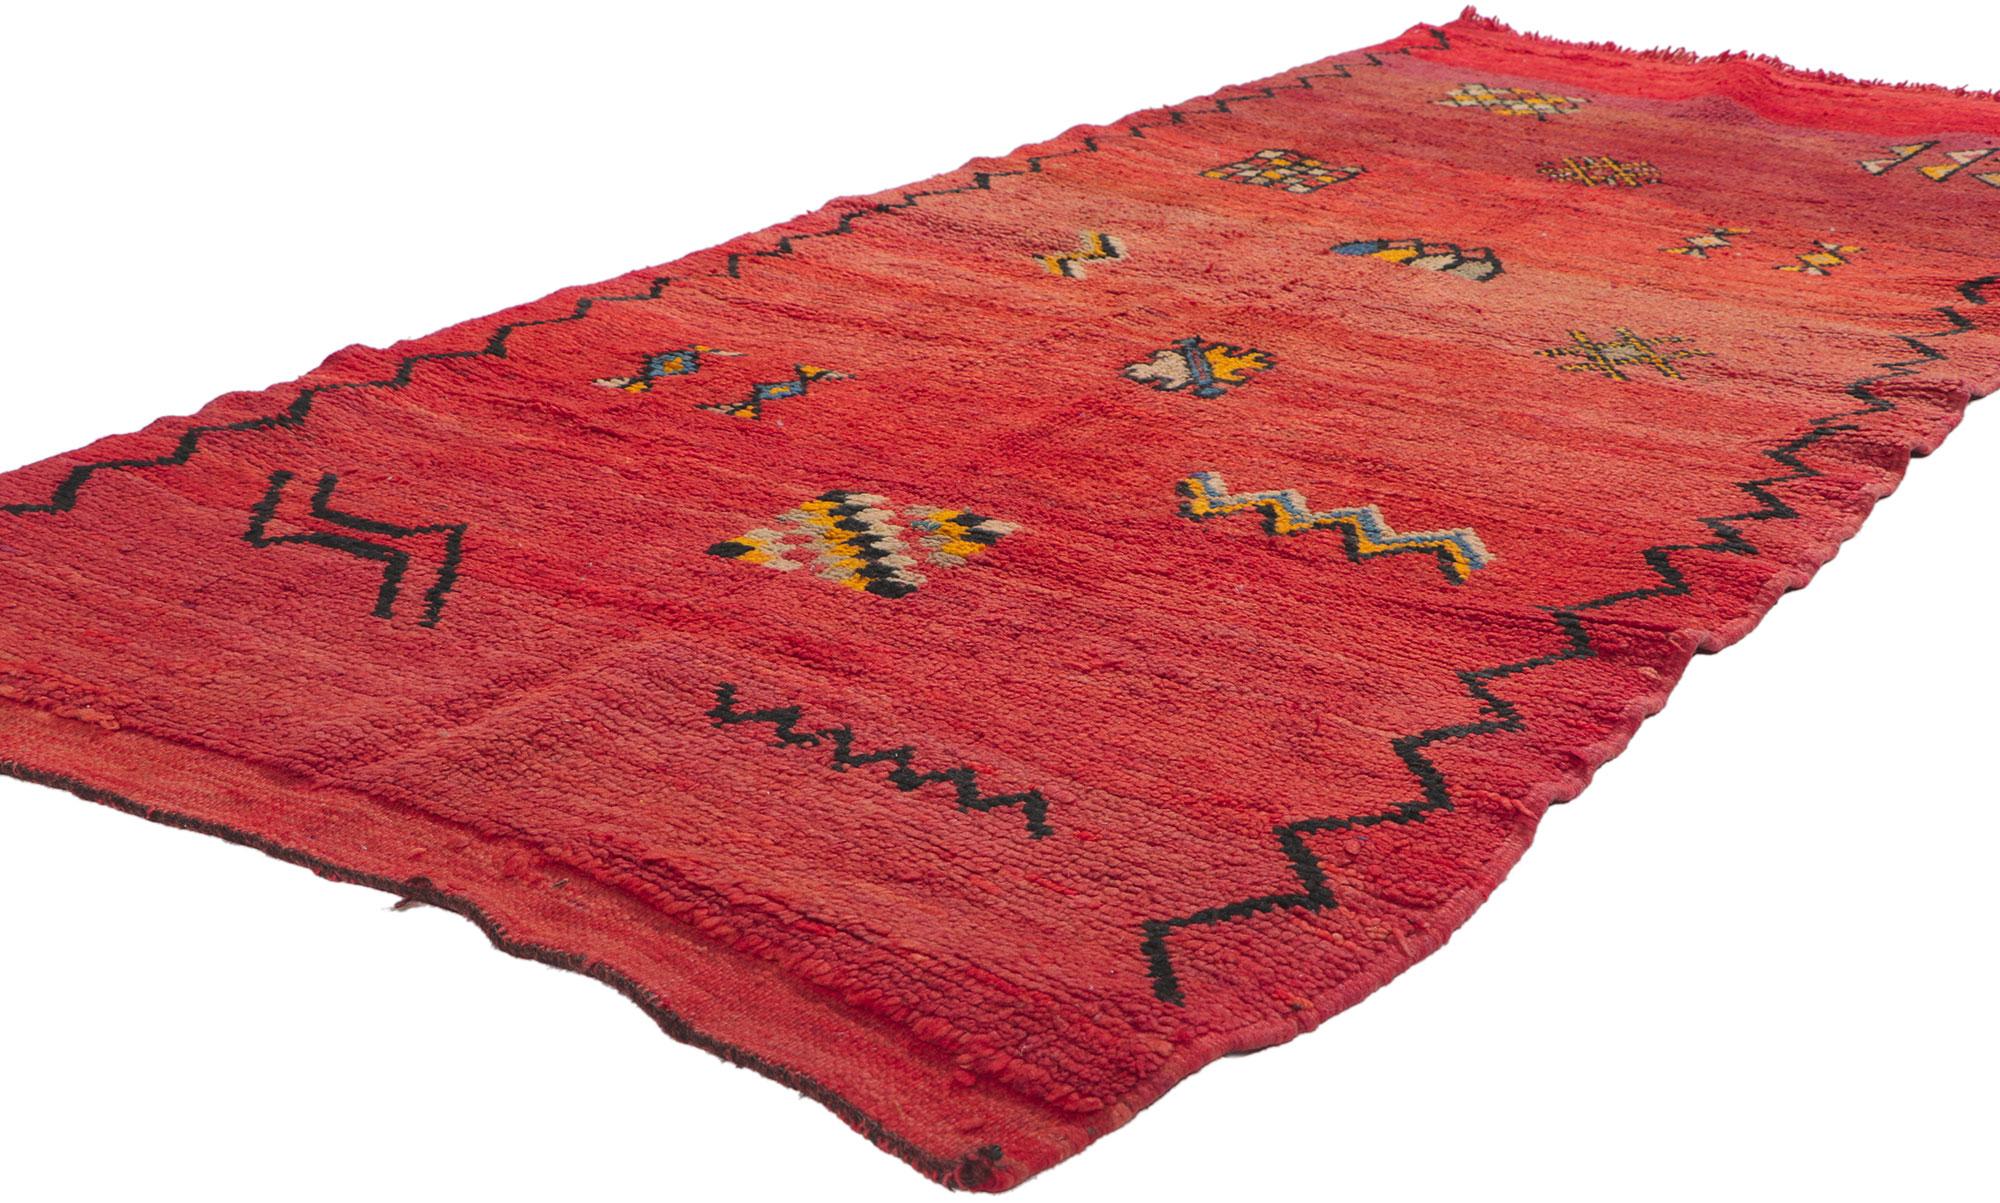 78404 Marokkanischer Teppich Vintage Red Boujad, 03'04 x 07'03. Boujad-Teppiche aus der marokkanischen Region Boujad sind exquisite handgewebte Meisterwerke, die das lebendige künstlerische Erbe der Berberstämme, insbesondere der Haouz und Rehamna,